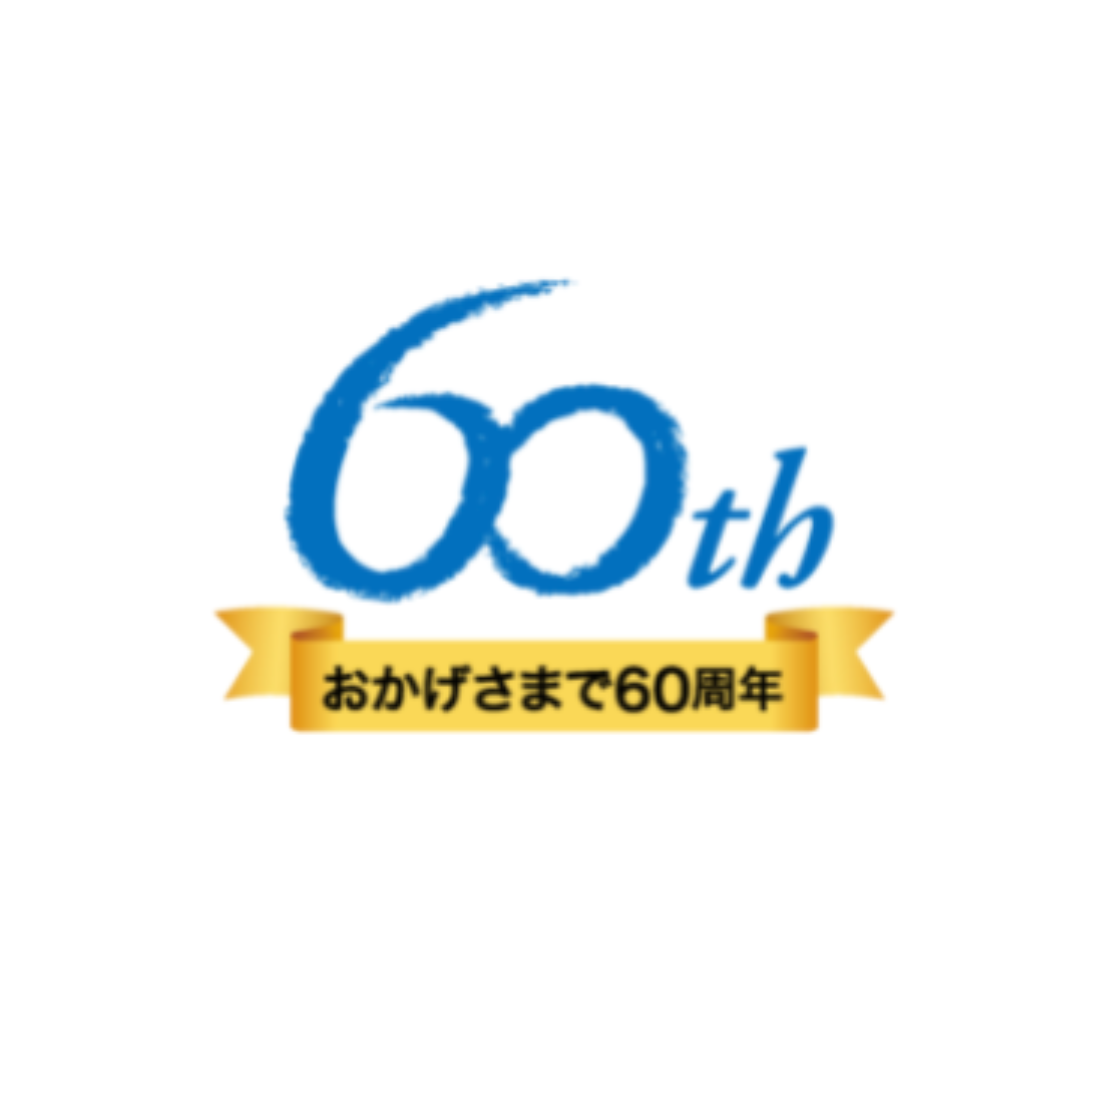 ビジネス成功のロゴデザイン日学様60周年 ロゴ